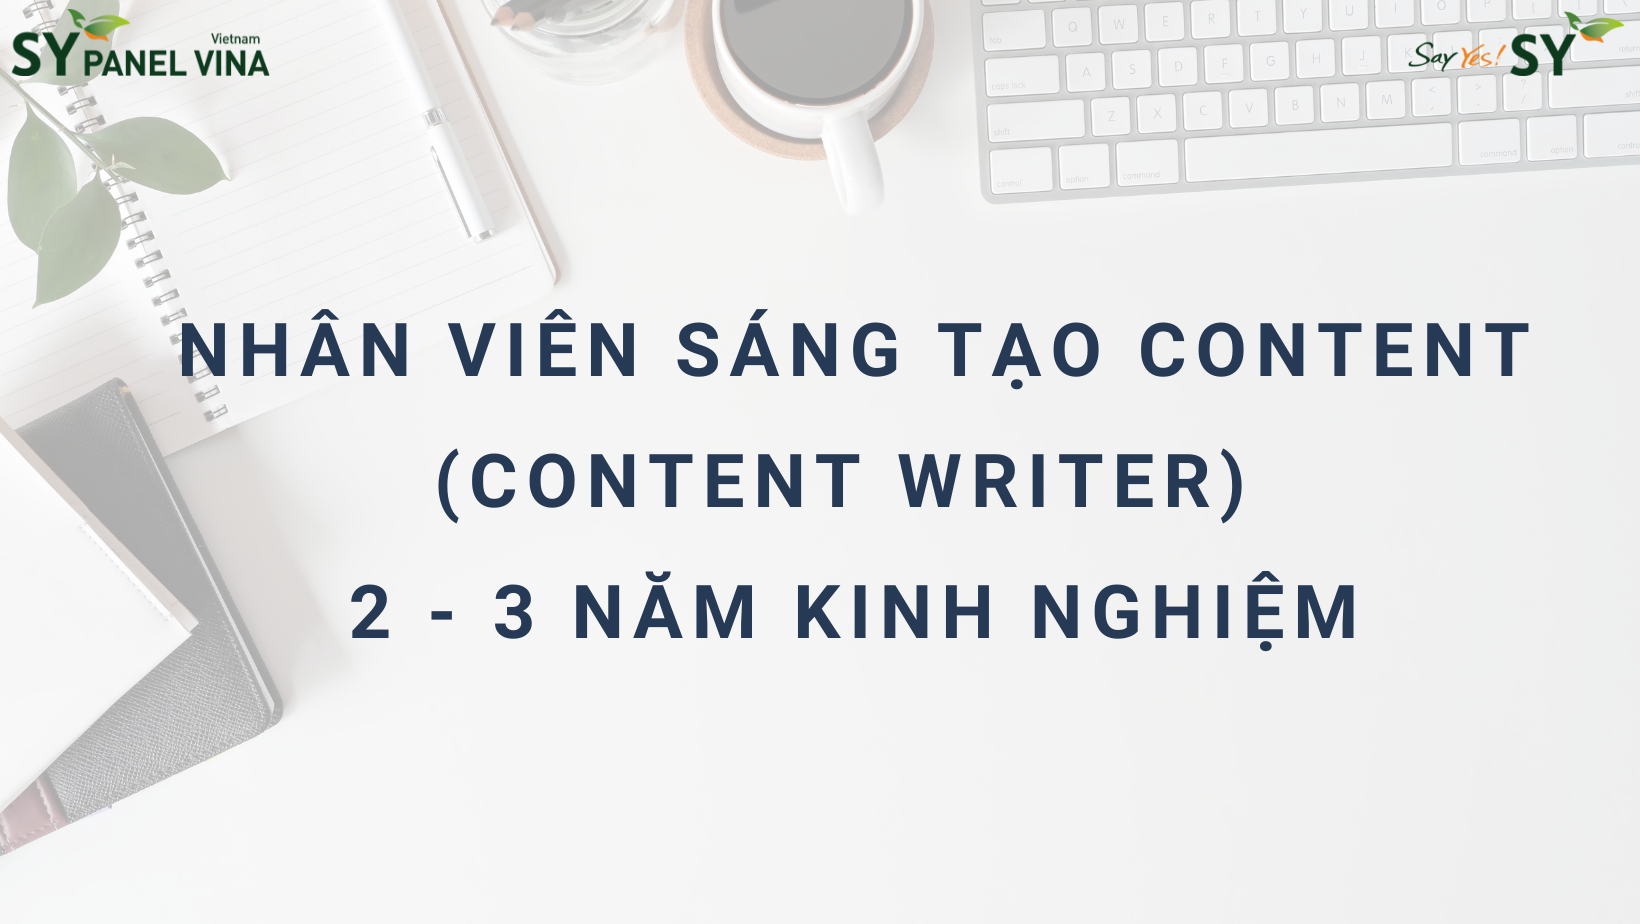 Nhân viên sáng tạo content (Content writer): 2 - 3 năm kinh nghiệm